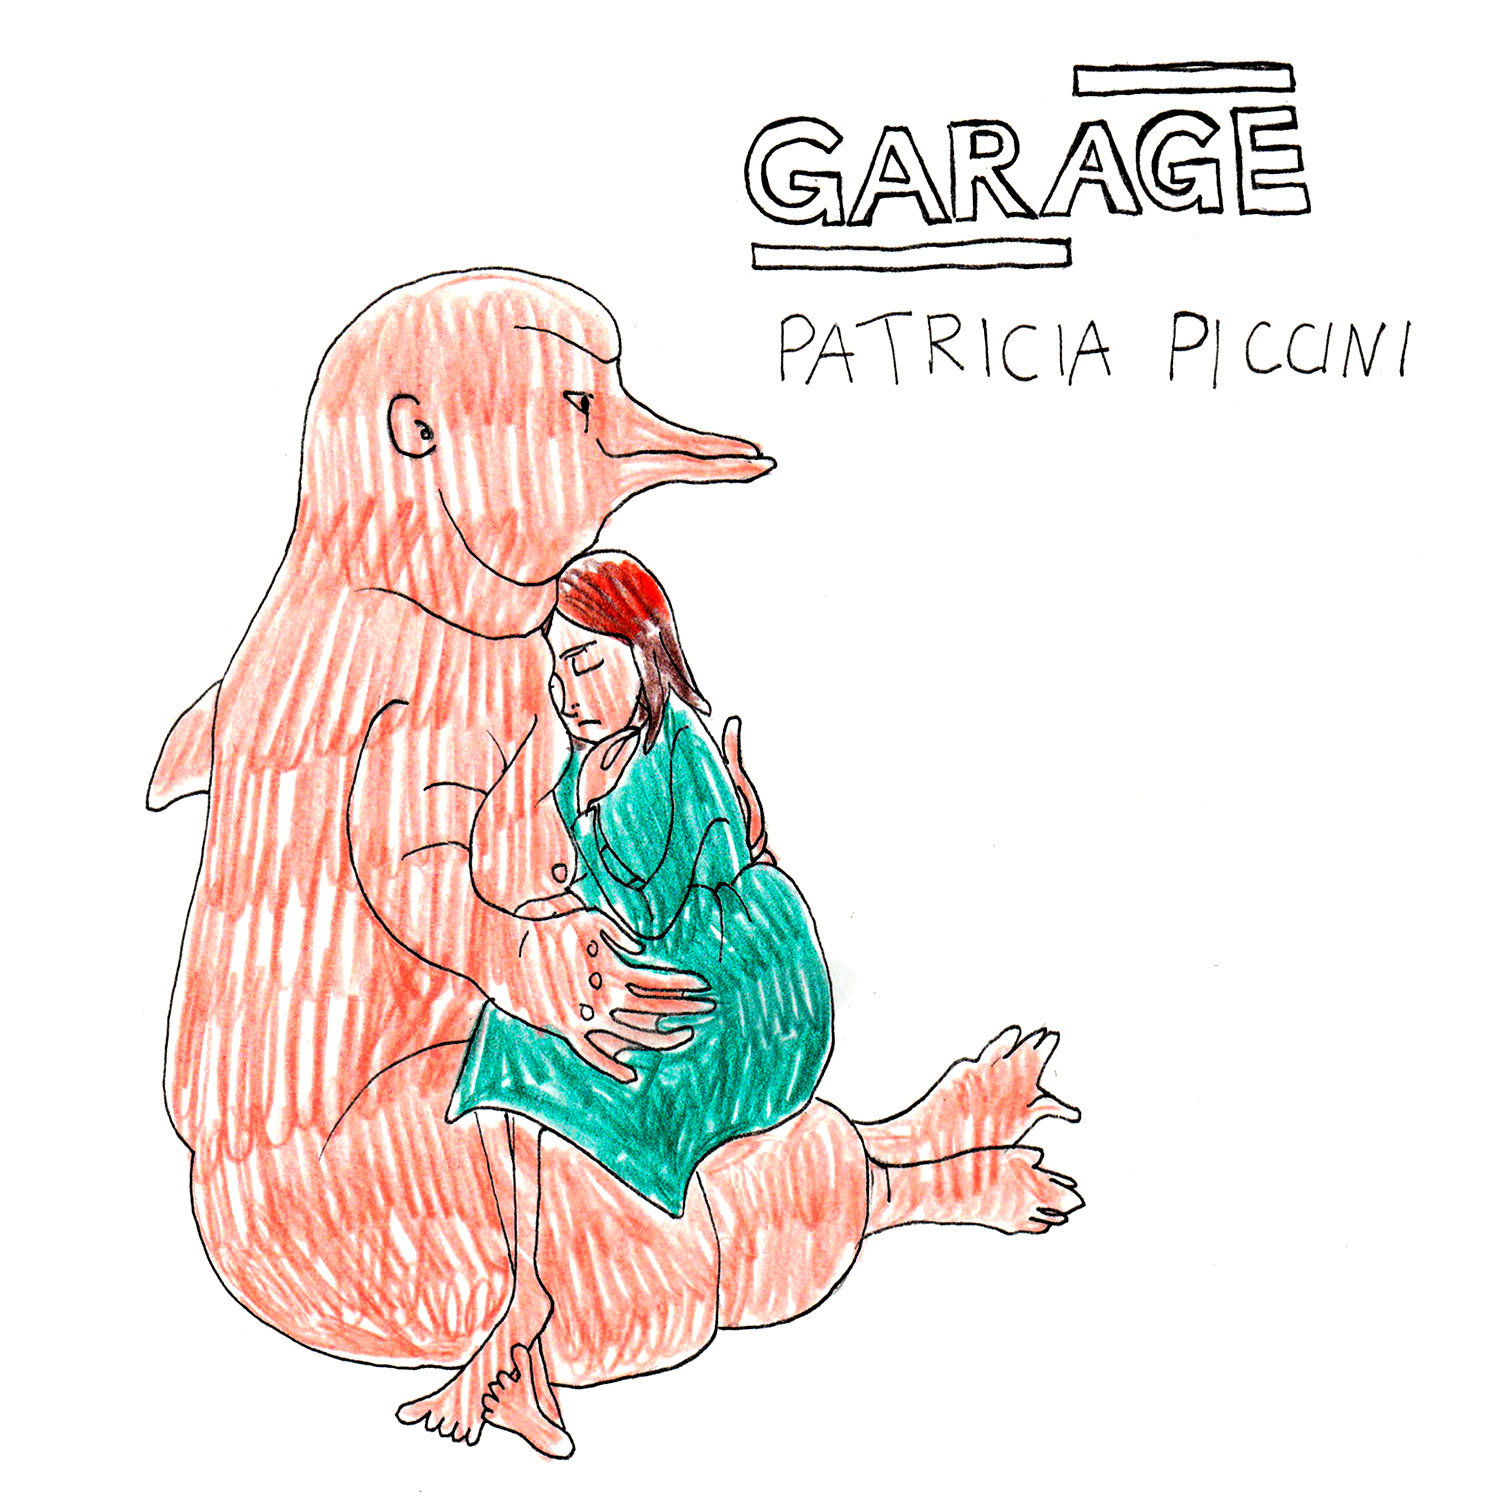 Patricia Piccinini выступит в Garage